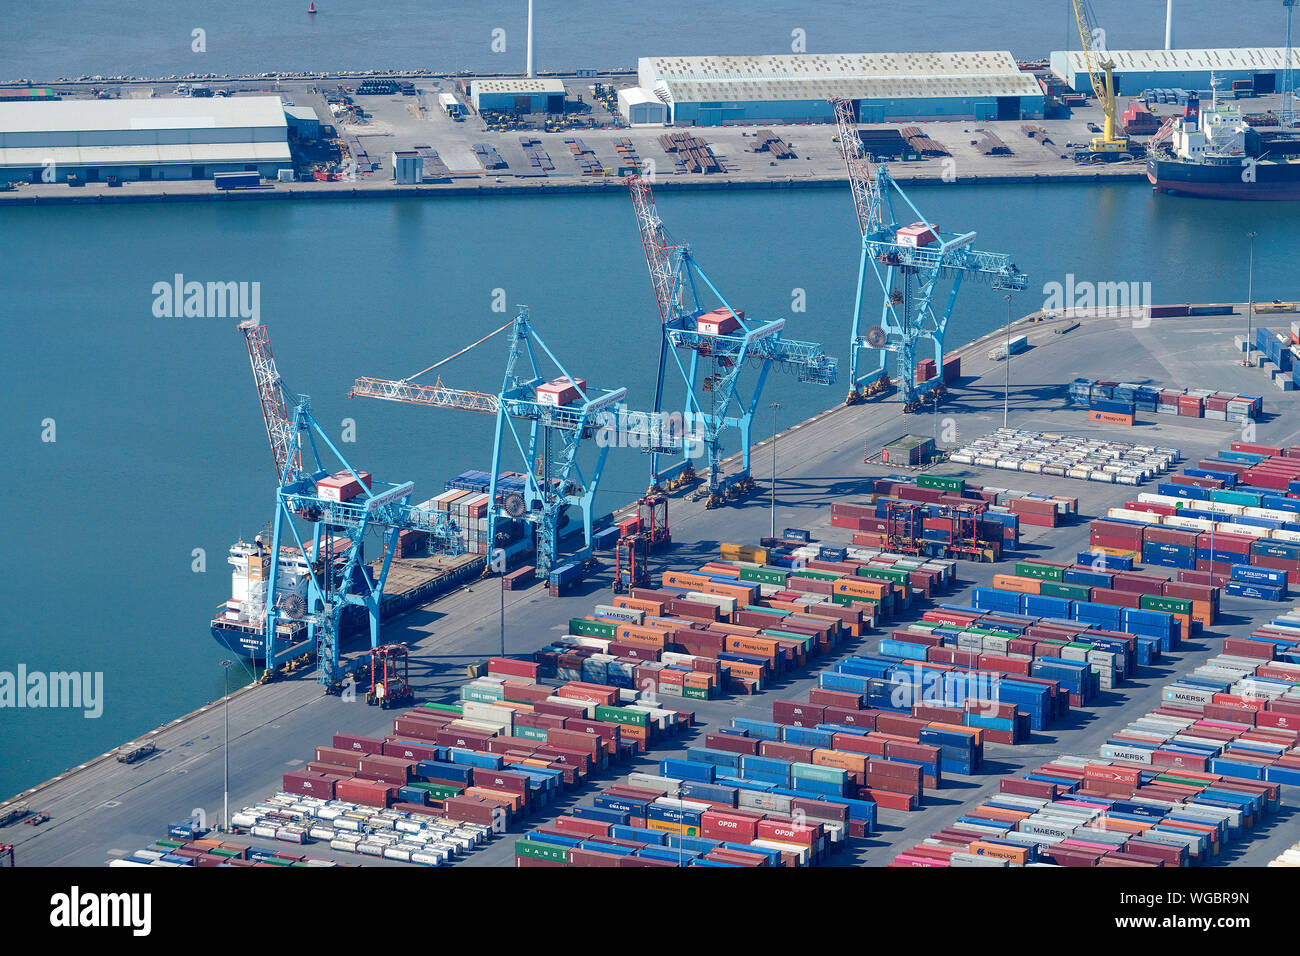 Ein Luftbild von Containern auf der Hafenassistent in Seaforth Dock, Liverpool, Merseyside, North West England, Großbritannien Stockfoto